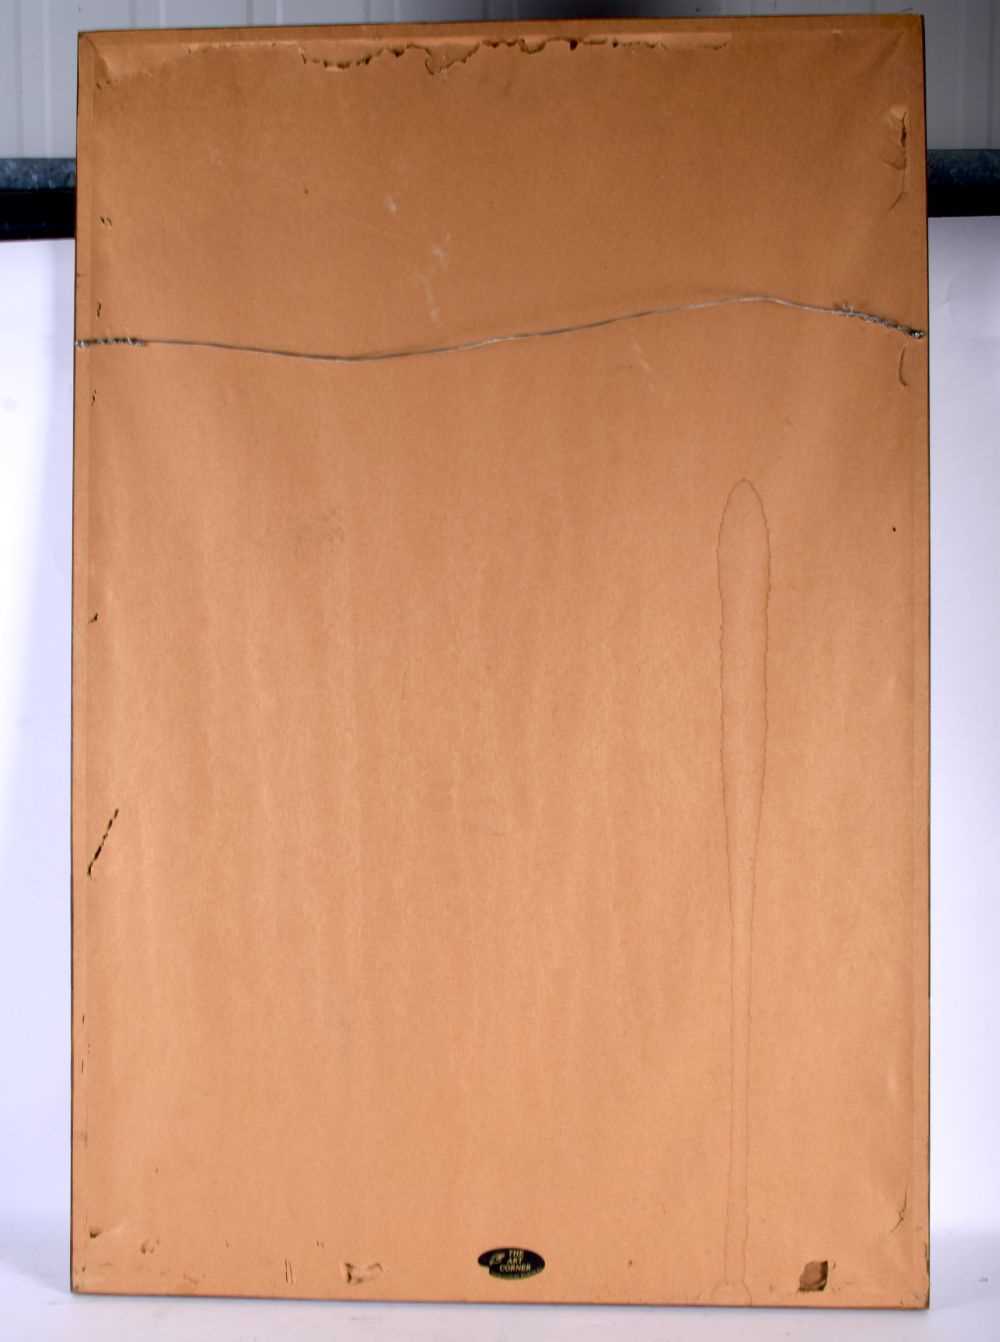 A 1970S SIGNED PICASSO HOMENAJE PRINT No 17 of 200. 90 cm x 60 cm. - Image 4 of 4